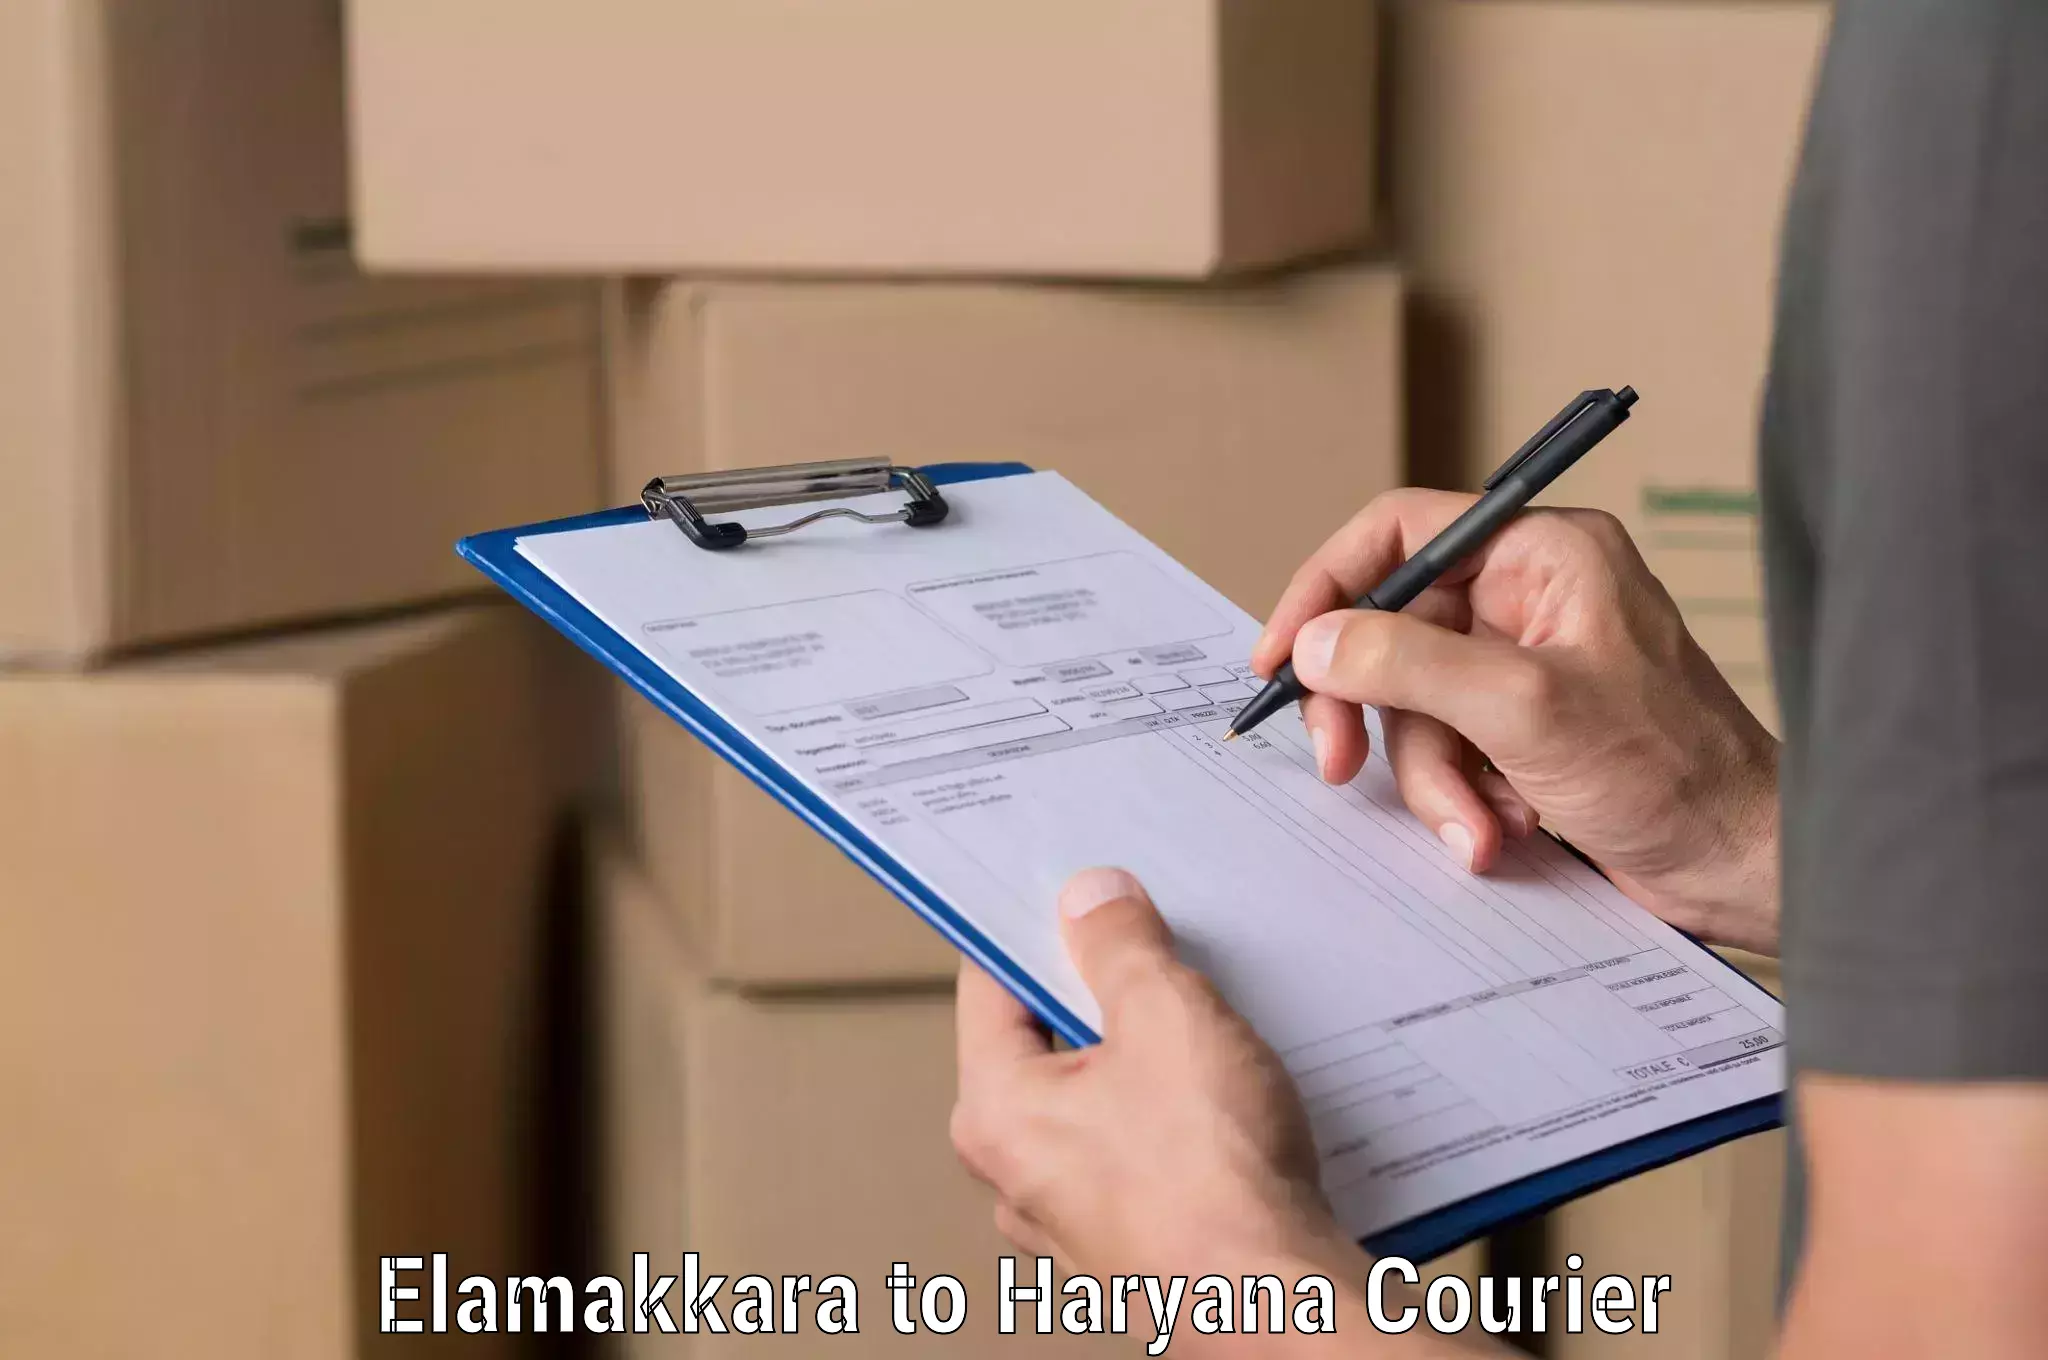 Customer-centric shipping in Elamakkara to Haryana